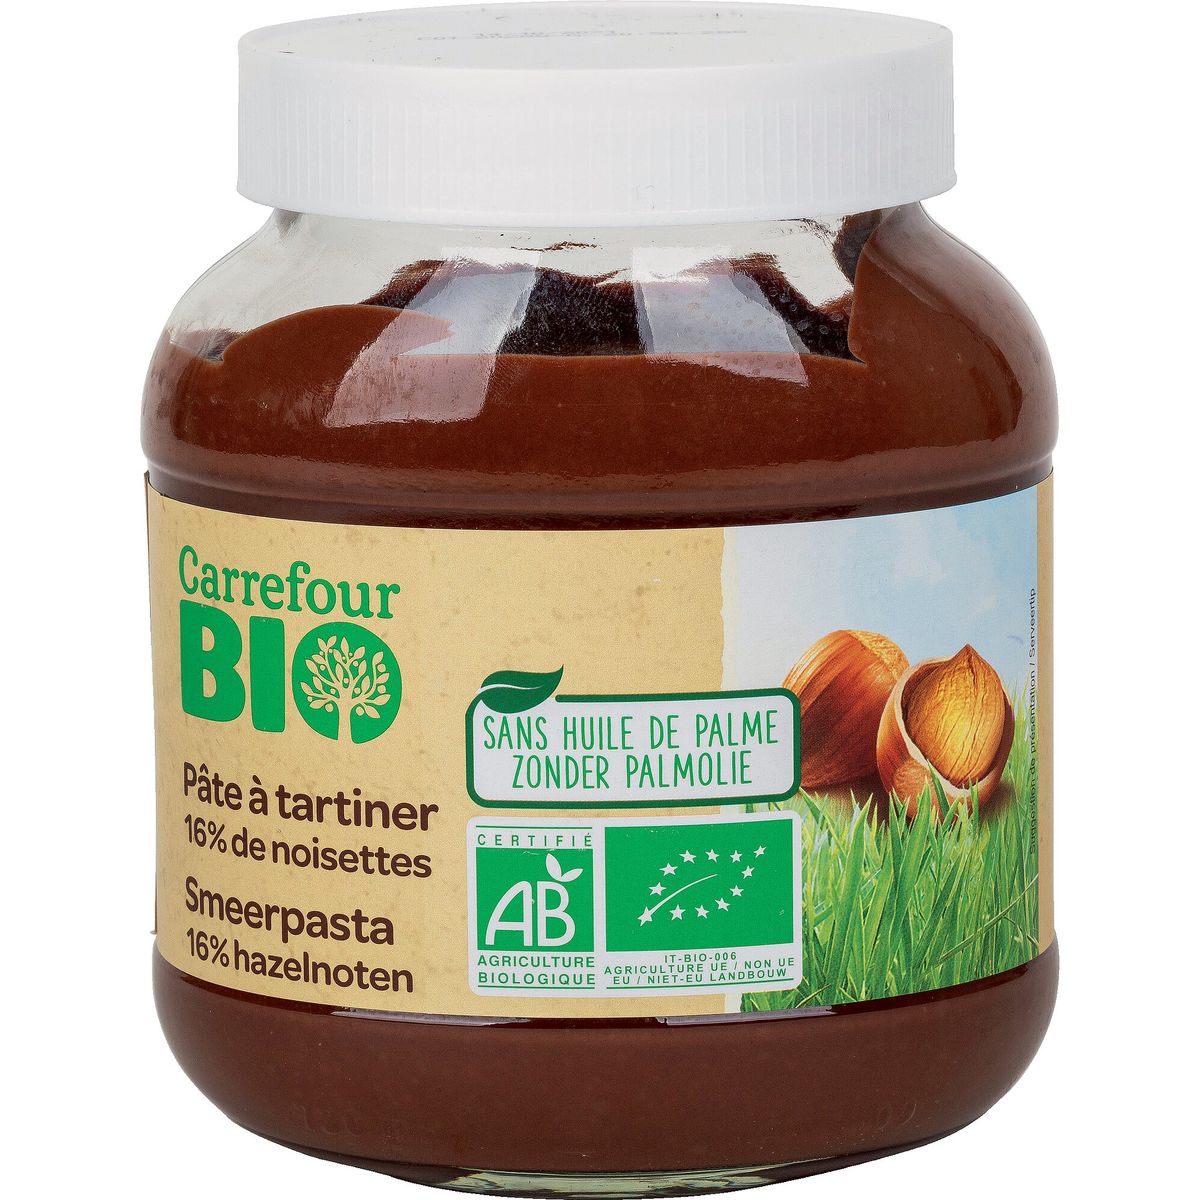 Carrefour Bio Smeerpasta 16% Hazelnoten 700 g